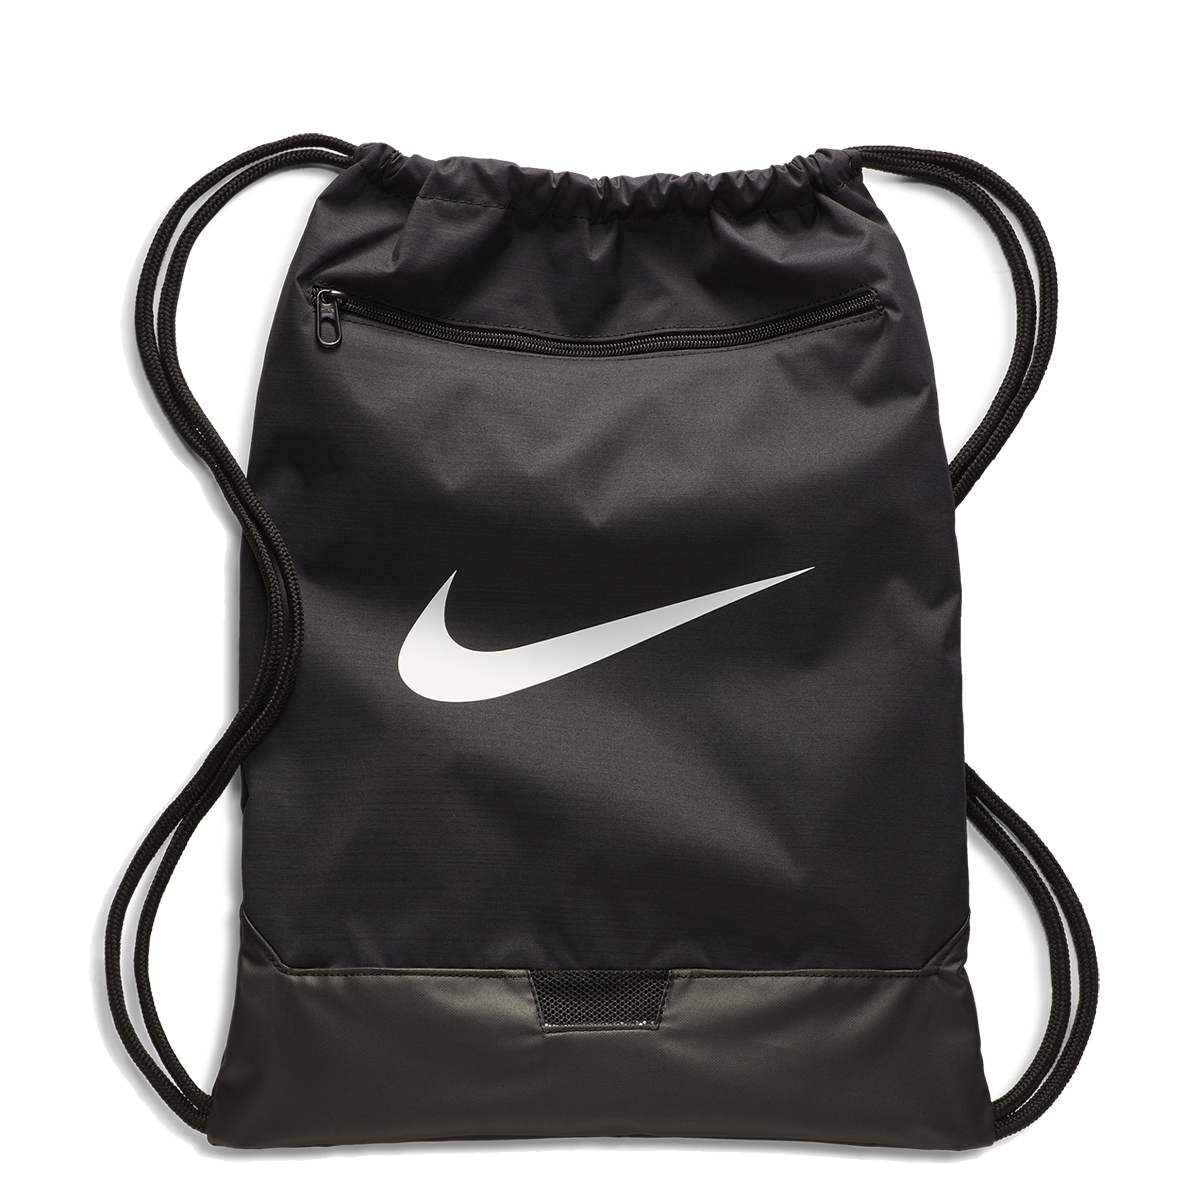 Nike Brasilia Gym Sack, , large image number null